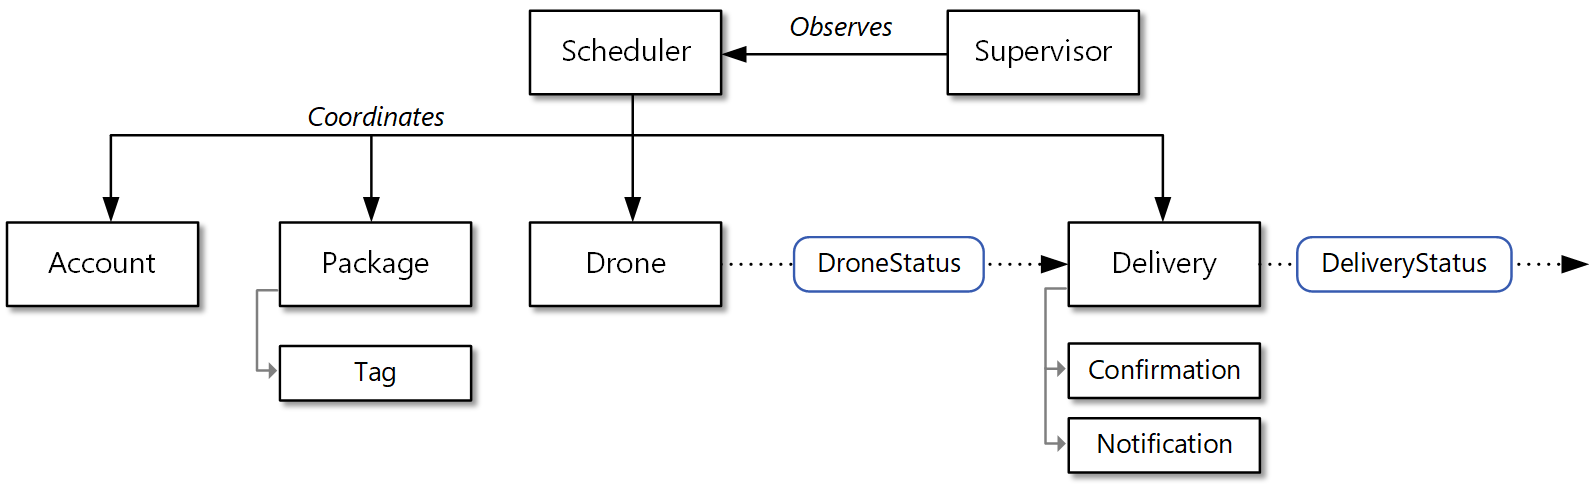 Diagrama do modelo de domínio revisto